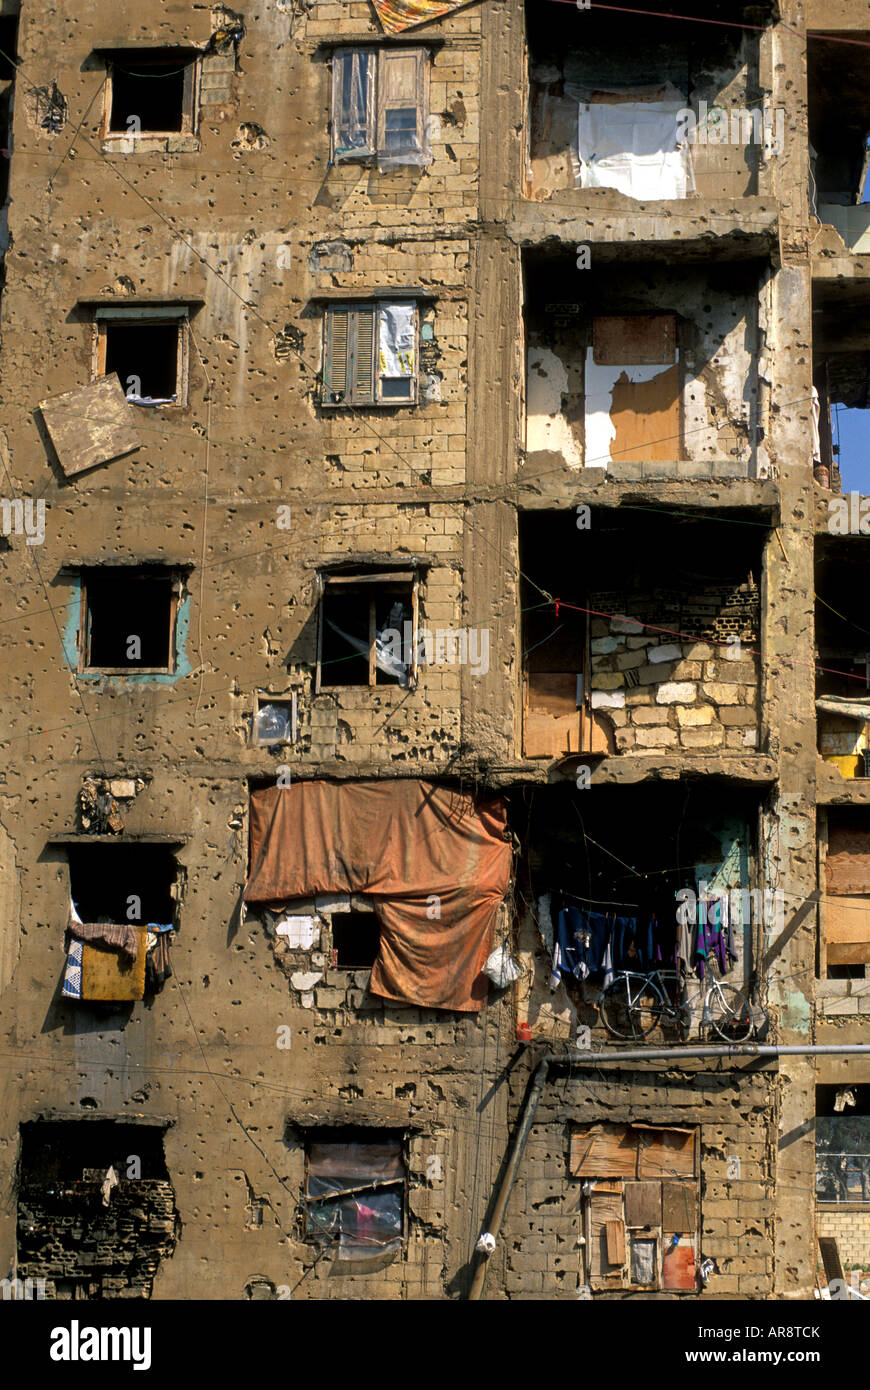 Bâtiment endommagé par la guerre civile et les familles pauvres vivant, Beyrouth Liban. Banque D'Images